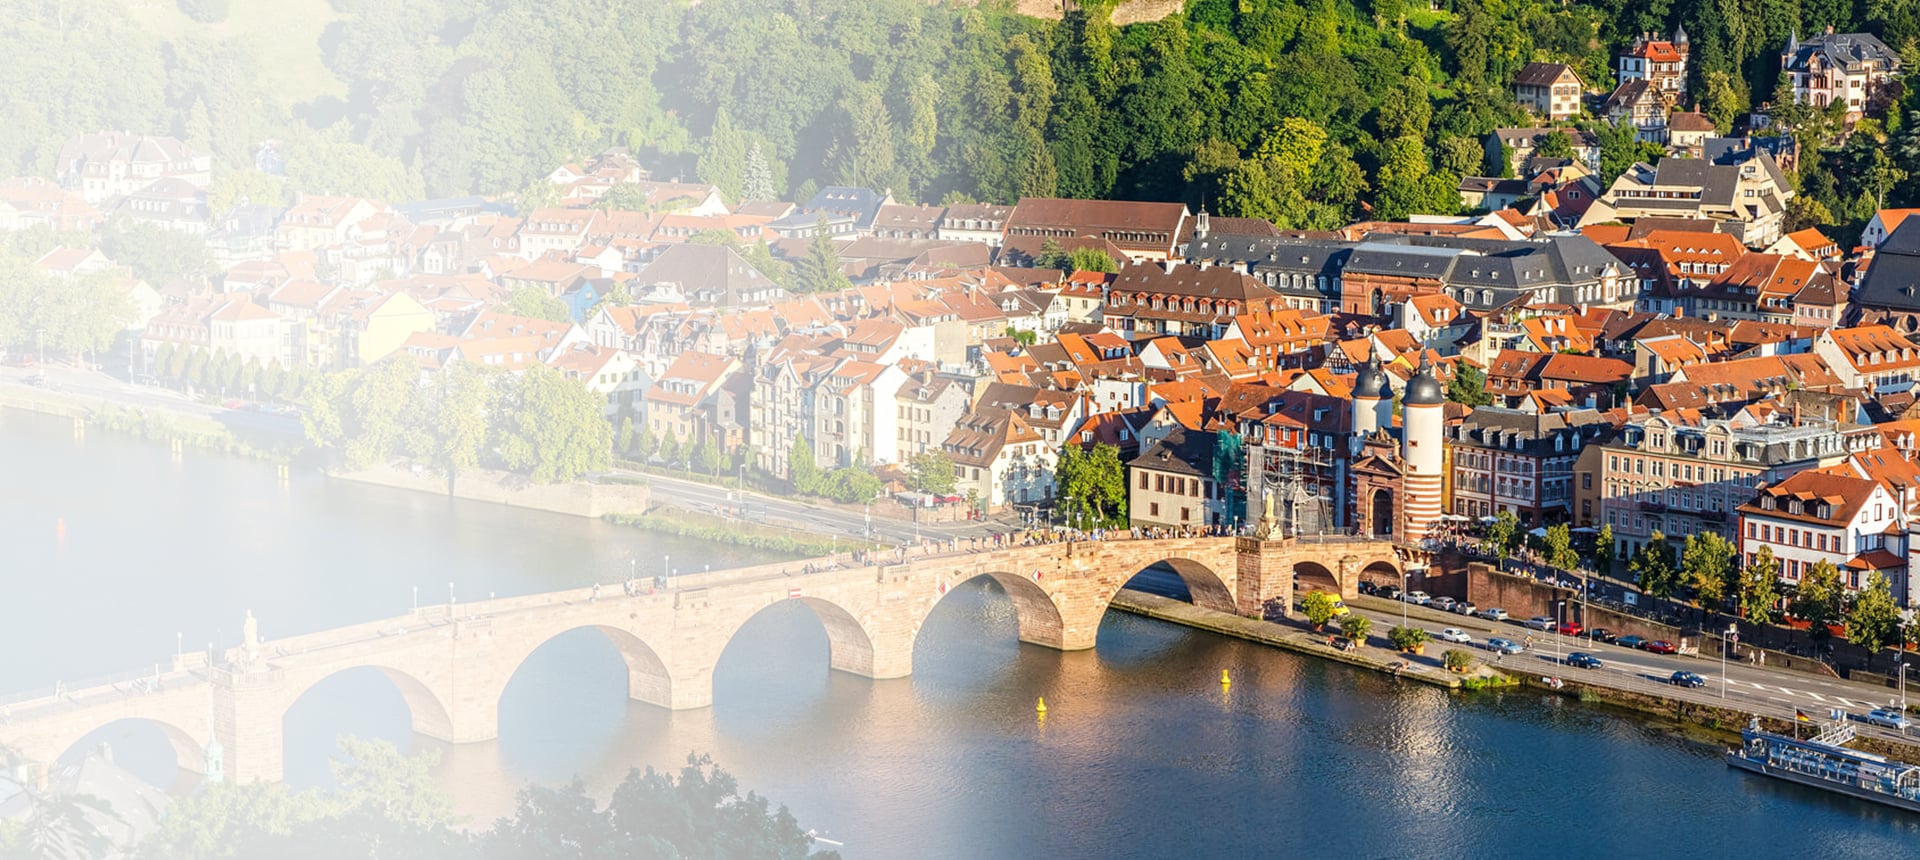 Alte Brücke von Heidelberg, ein Standort von DAHMEN Personalservice